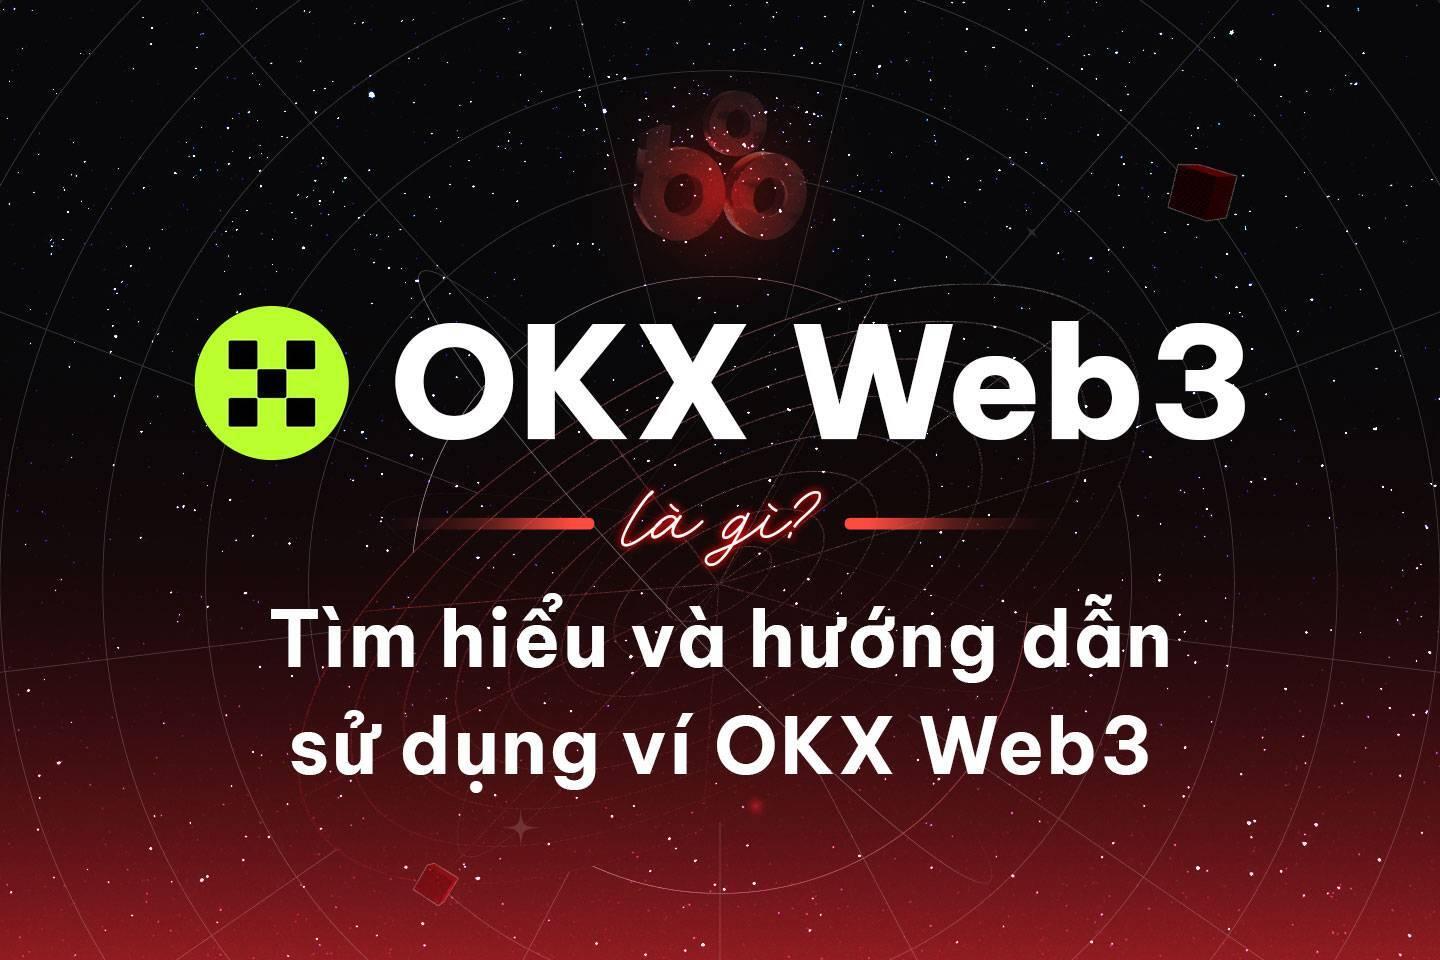 okx-web3-la-gi-tim-hieu-va-huong-dan-su-dung-vi-okx-web3